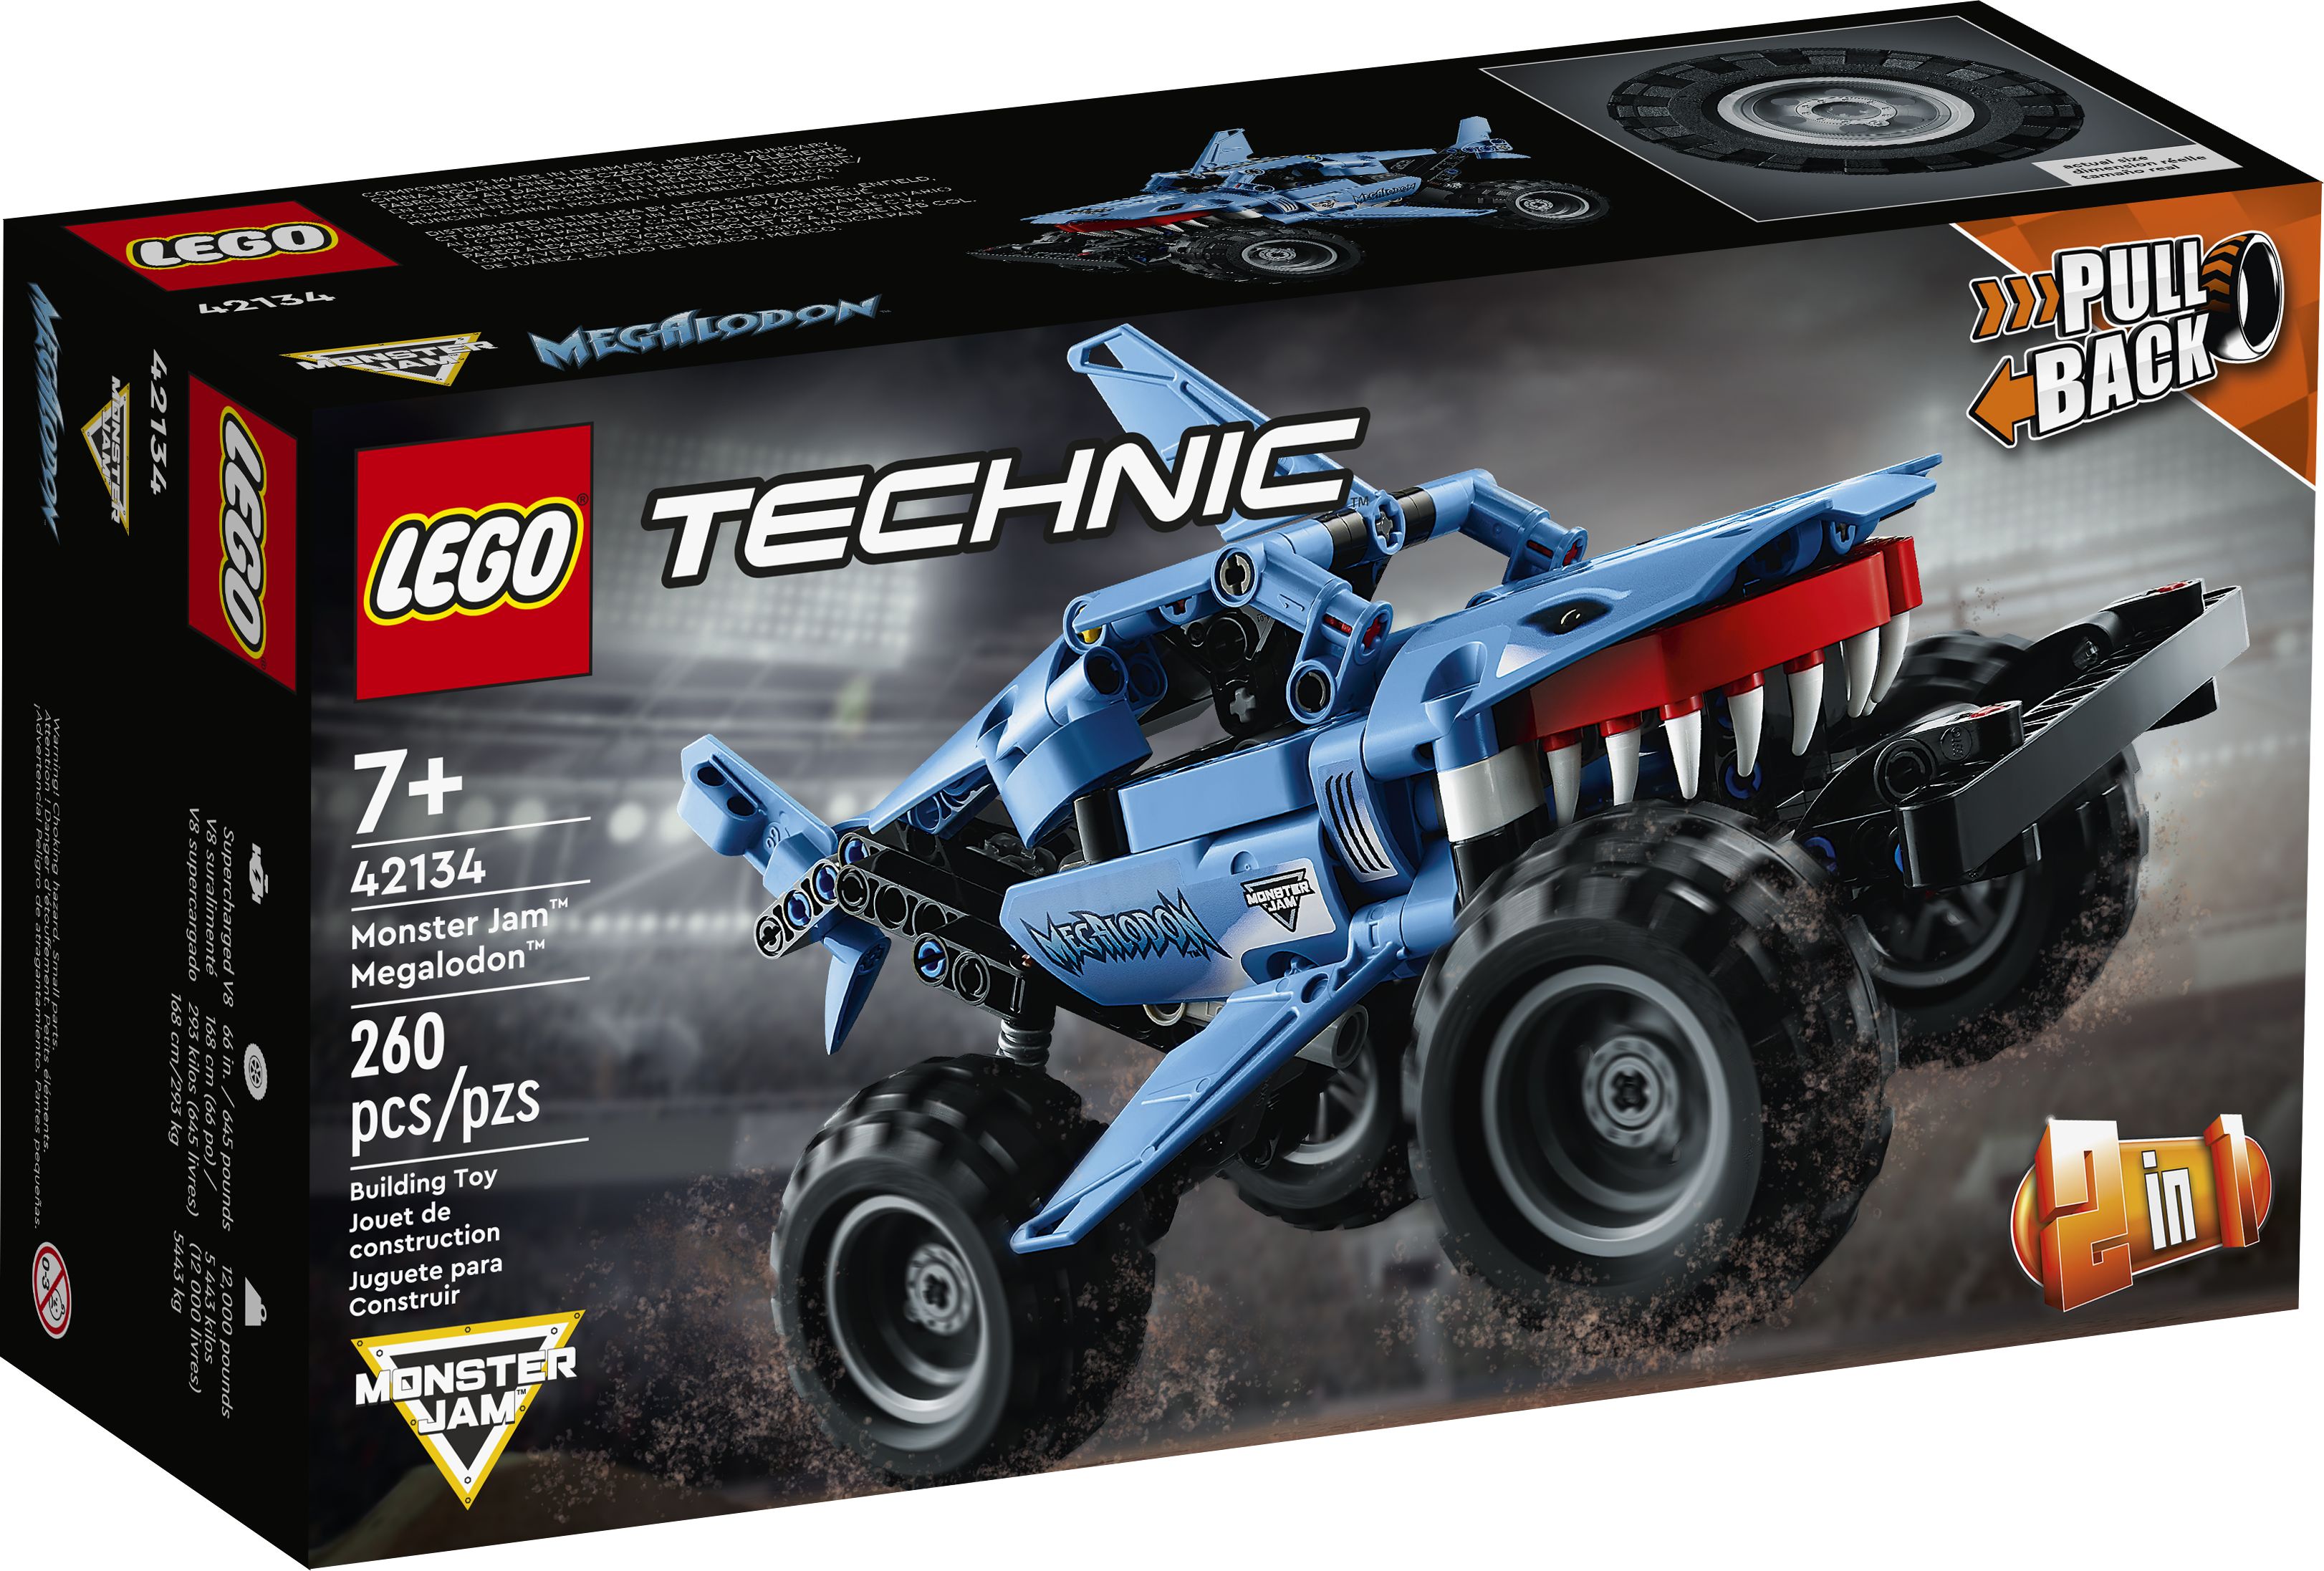 LEGO Technic 42134 Monster Jam™ Megalodon™ LEGO_42134_Box1_v39.jpg